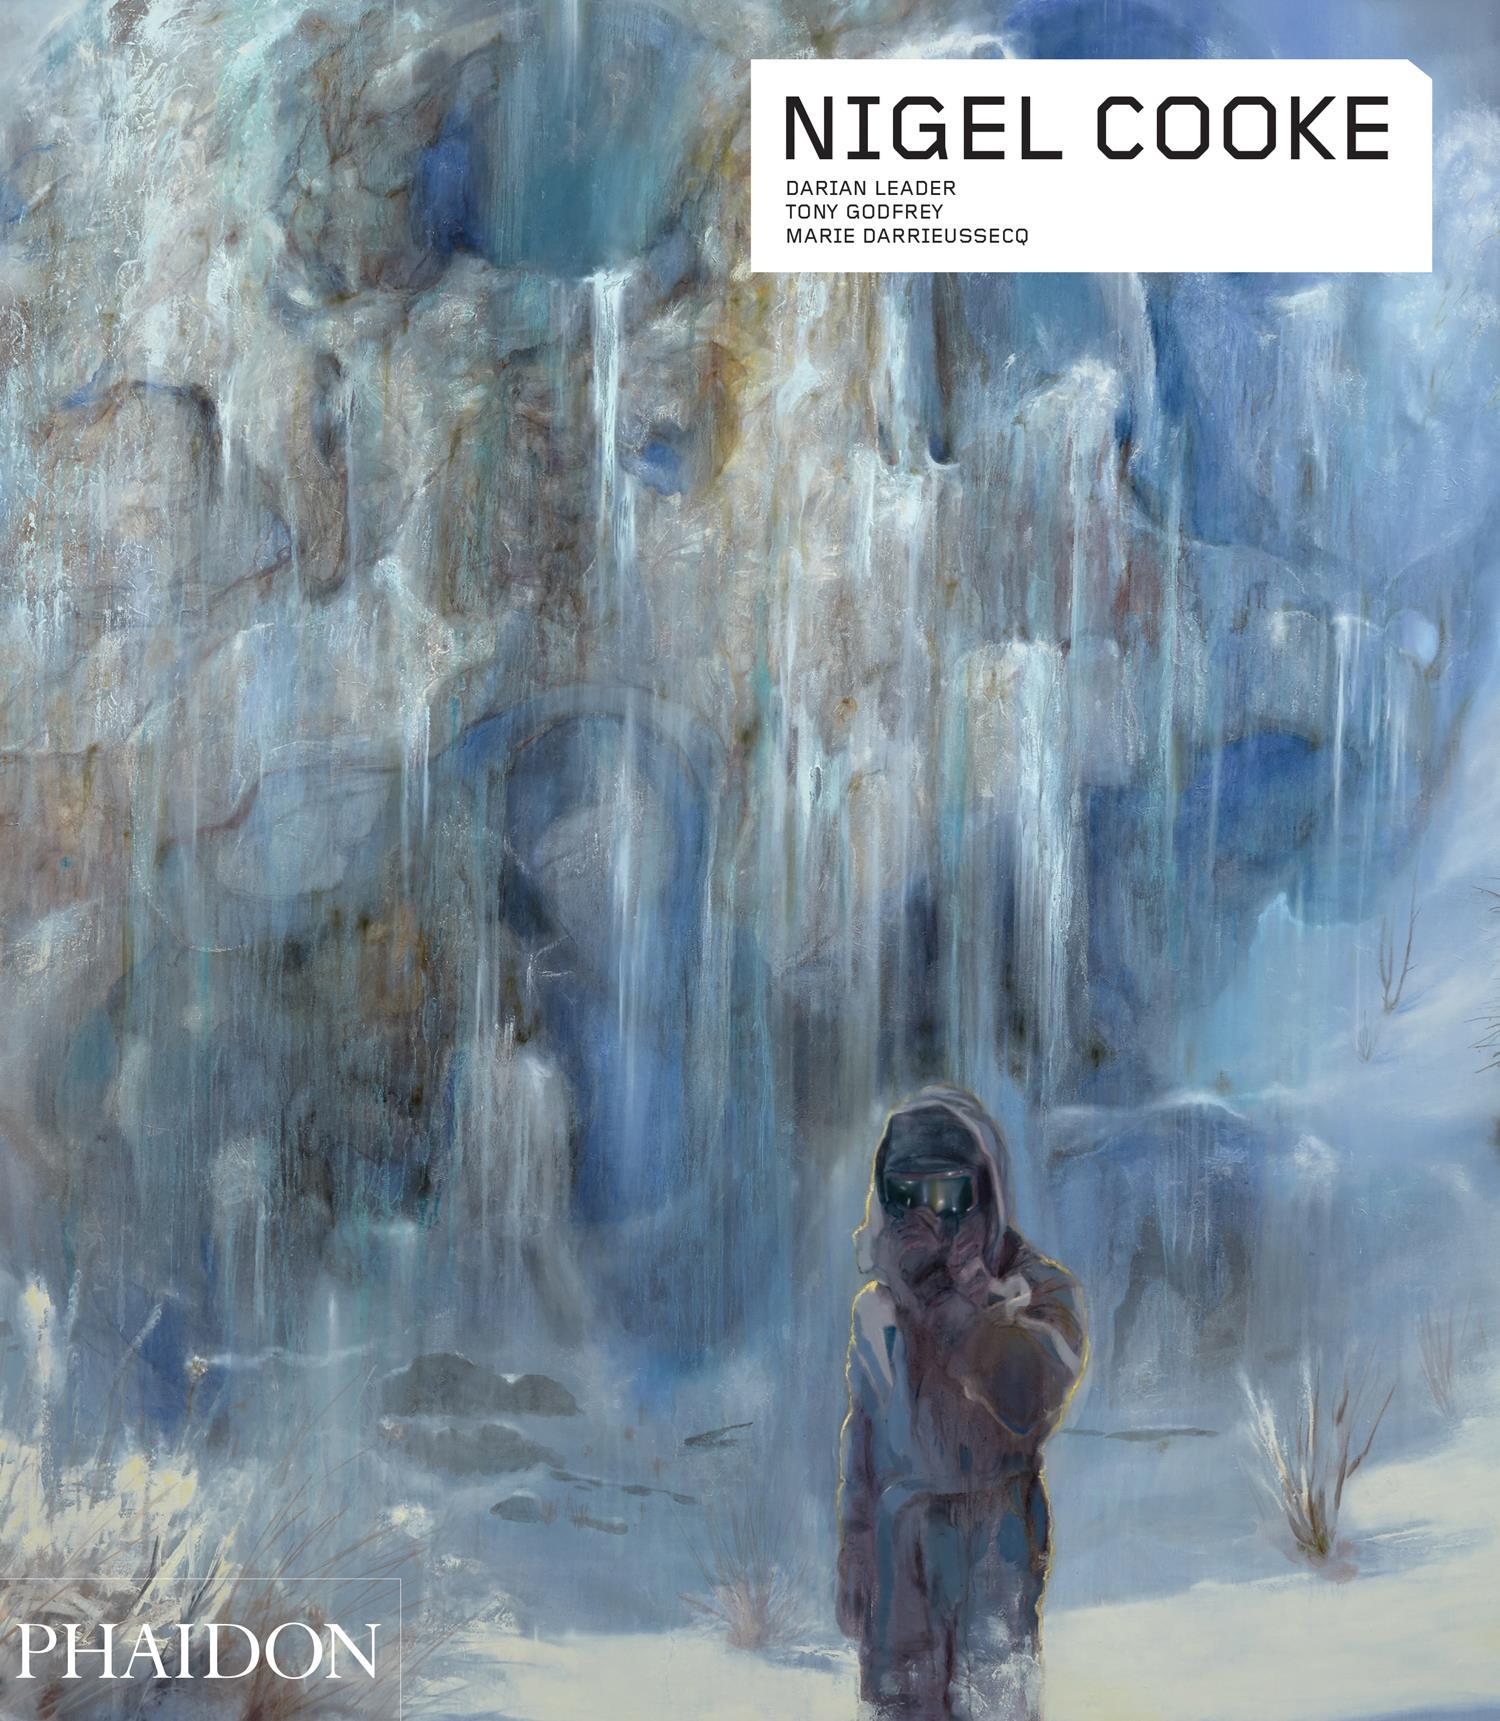 Cooke, Nigel - Marie Darrieussecq|Darian Leader|Tony Godfrey